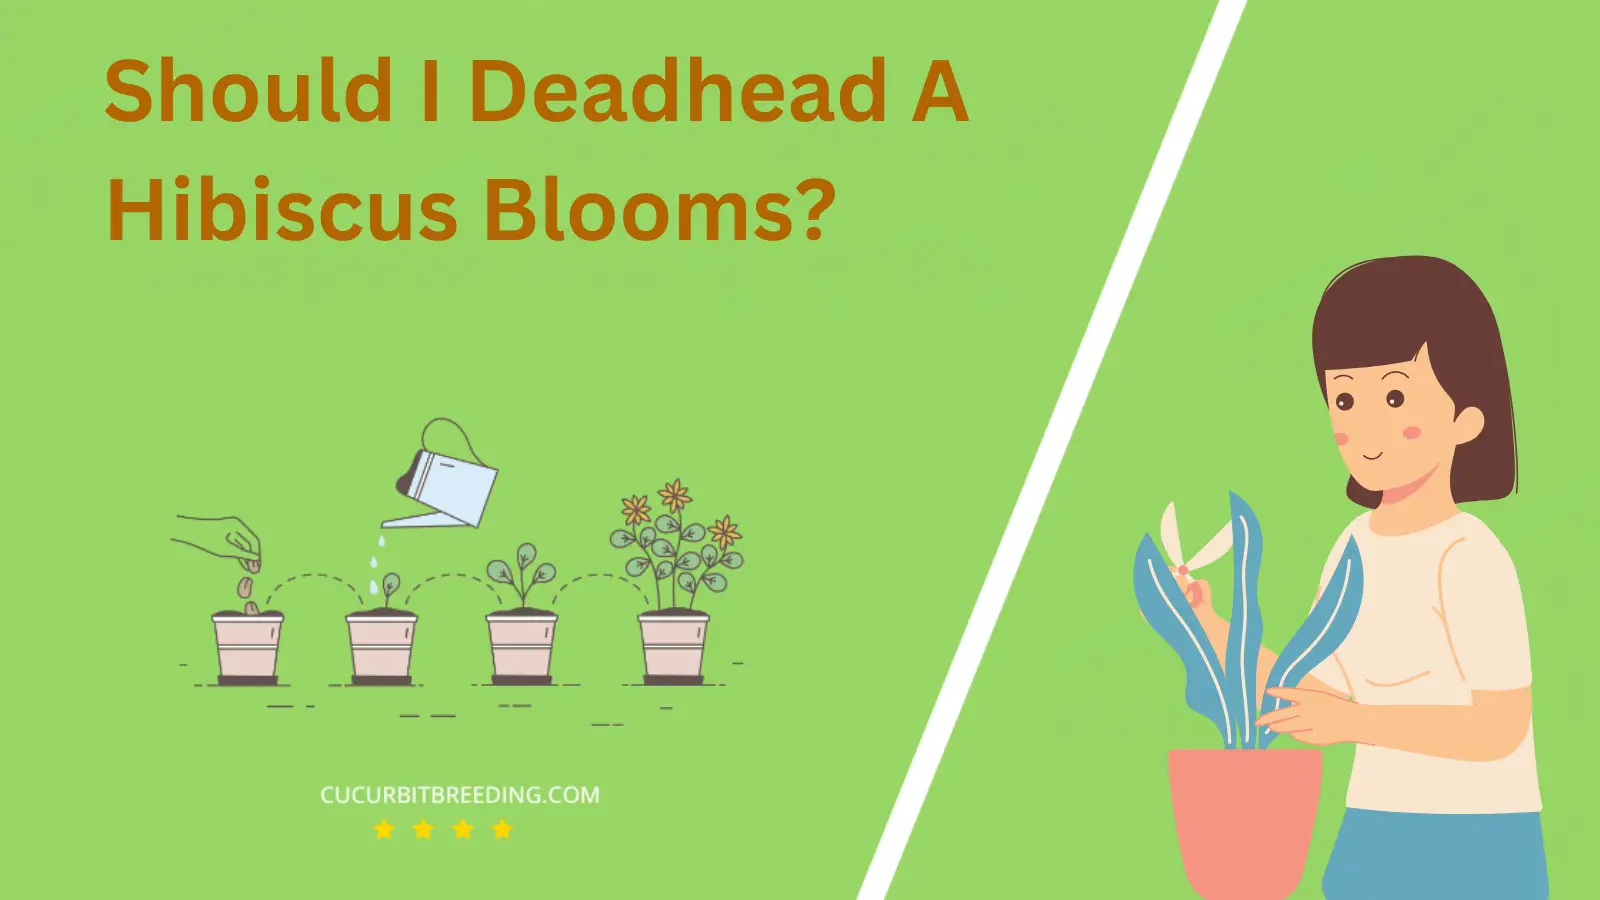 Should I Deadhead A Hibiscus Blooms?